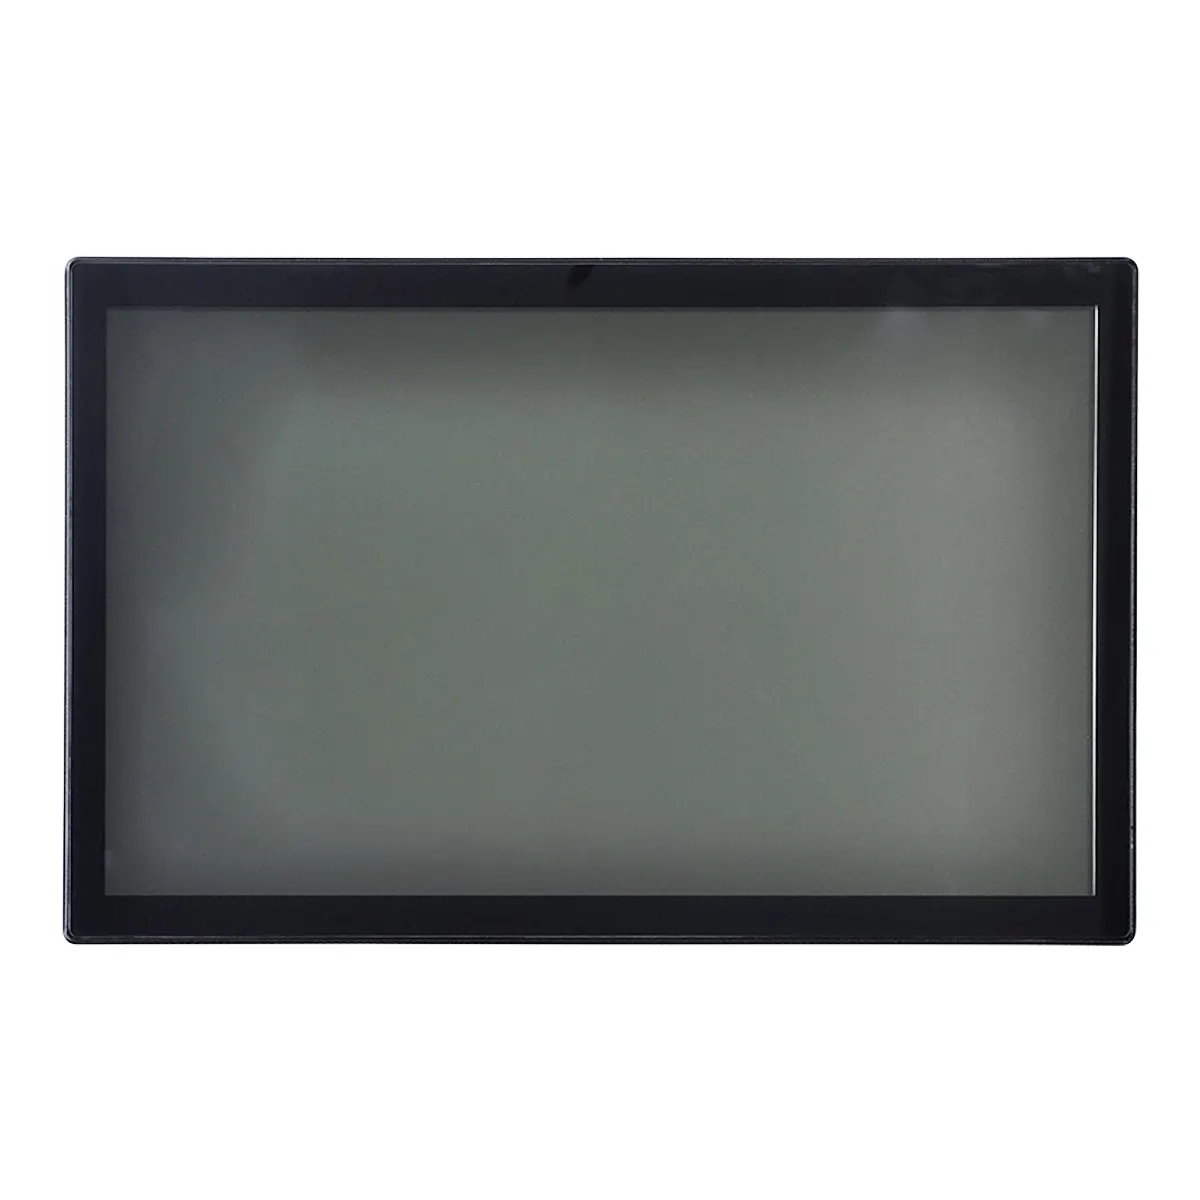 شاشة عرض LCD عالية الدقة 27 بوصة خارجية تعمل بنظام تشغيل أندرويد/واين تابلت تفاعلي صندوق خشبي من شنتشن شاشة قاعة معرض معدنية SDK ورقائق